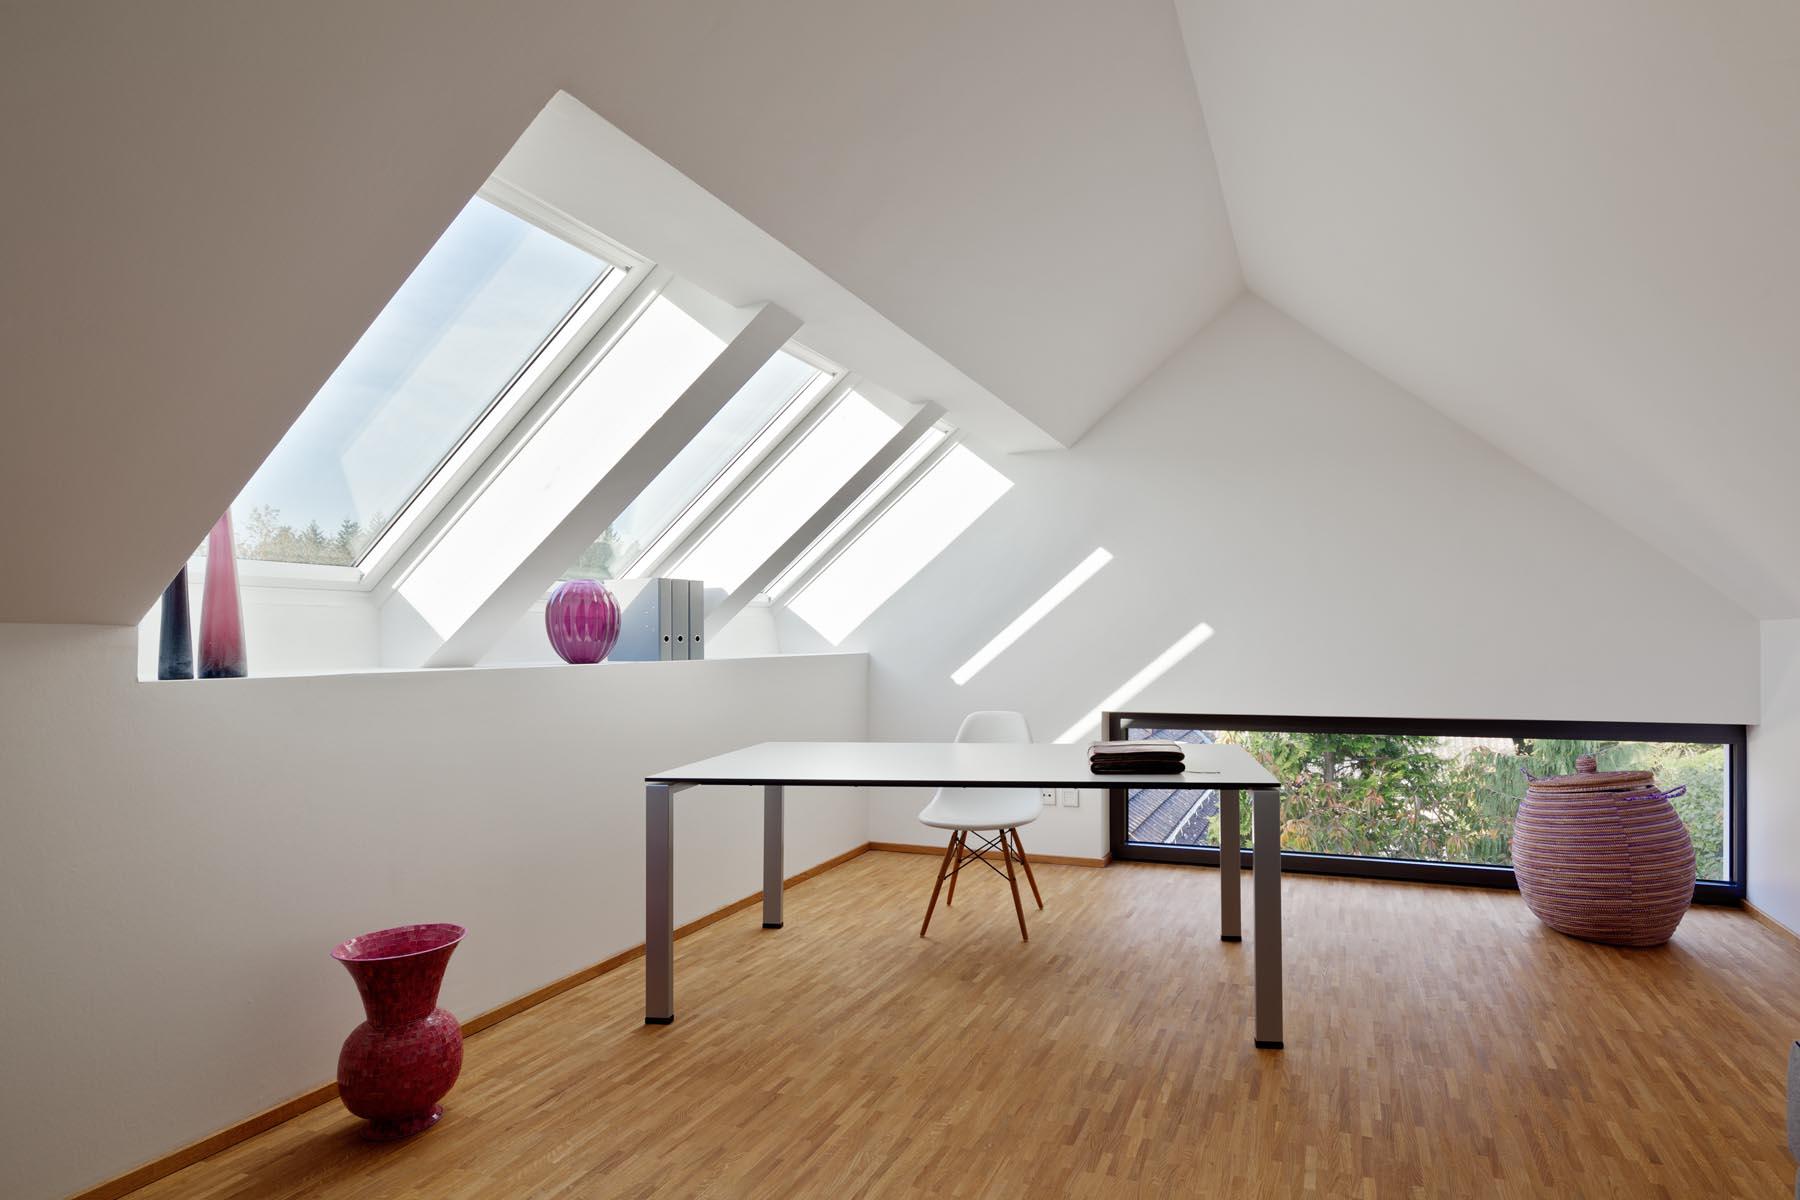 Wohnhaus mit Praxis #dachfenster ©Thomas Ott